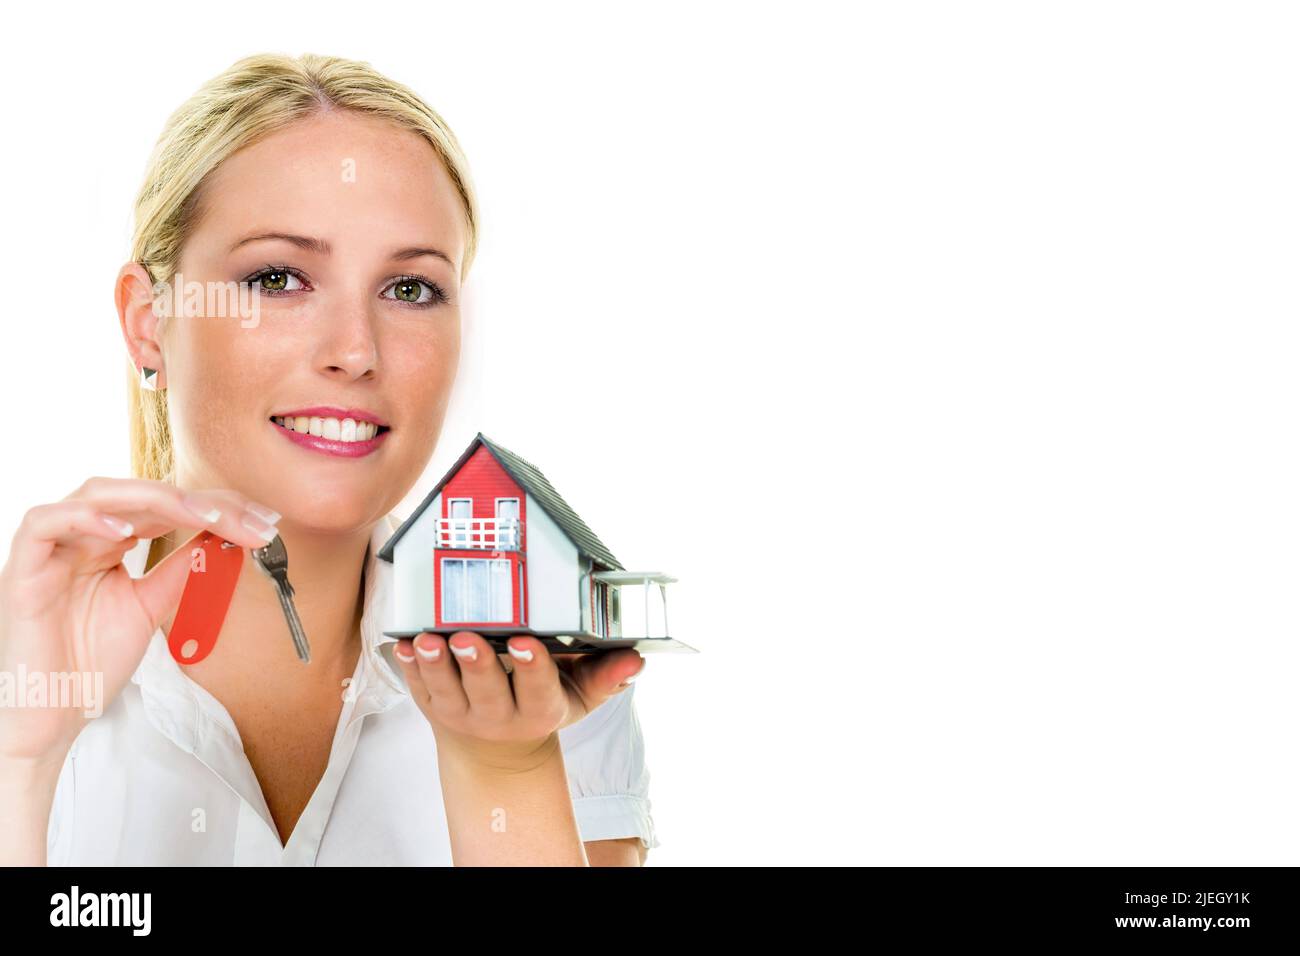 Eine Frau beschützt Ihr Haus und Eigenheim. Gute Versicherung und seriöse Finanzierung beruhigen. Stock Photo